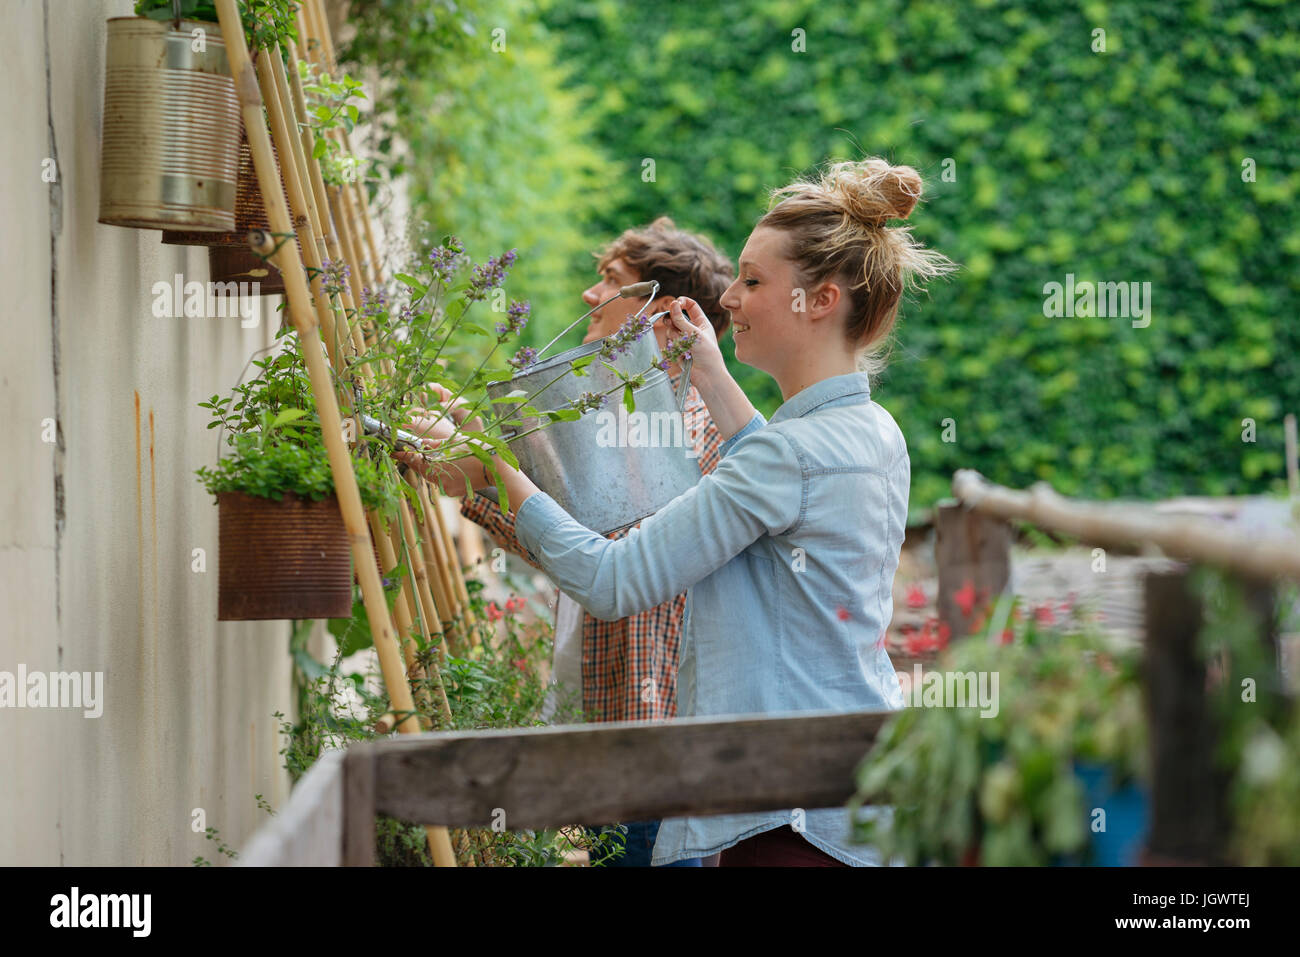 Jeune homme et femme ayant tendance à les plantes qui poussent dans des boîtes, jeune femme l'arrosage des plantes à l'aide d'arrosoir Banque D'Images